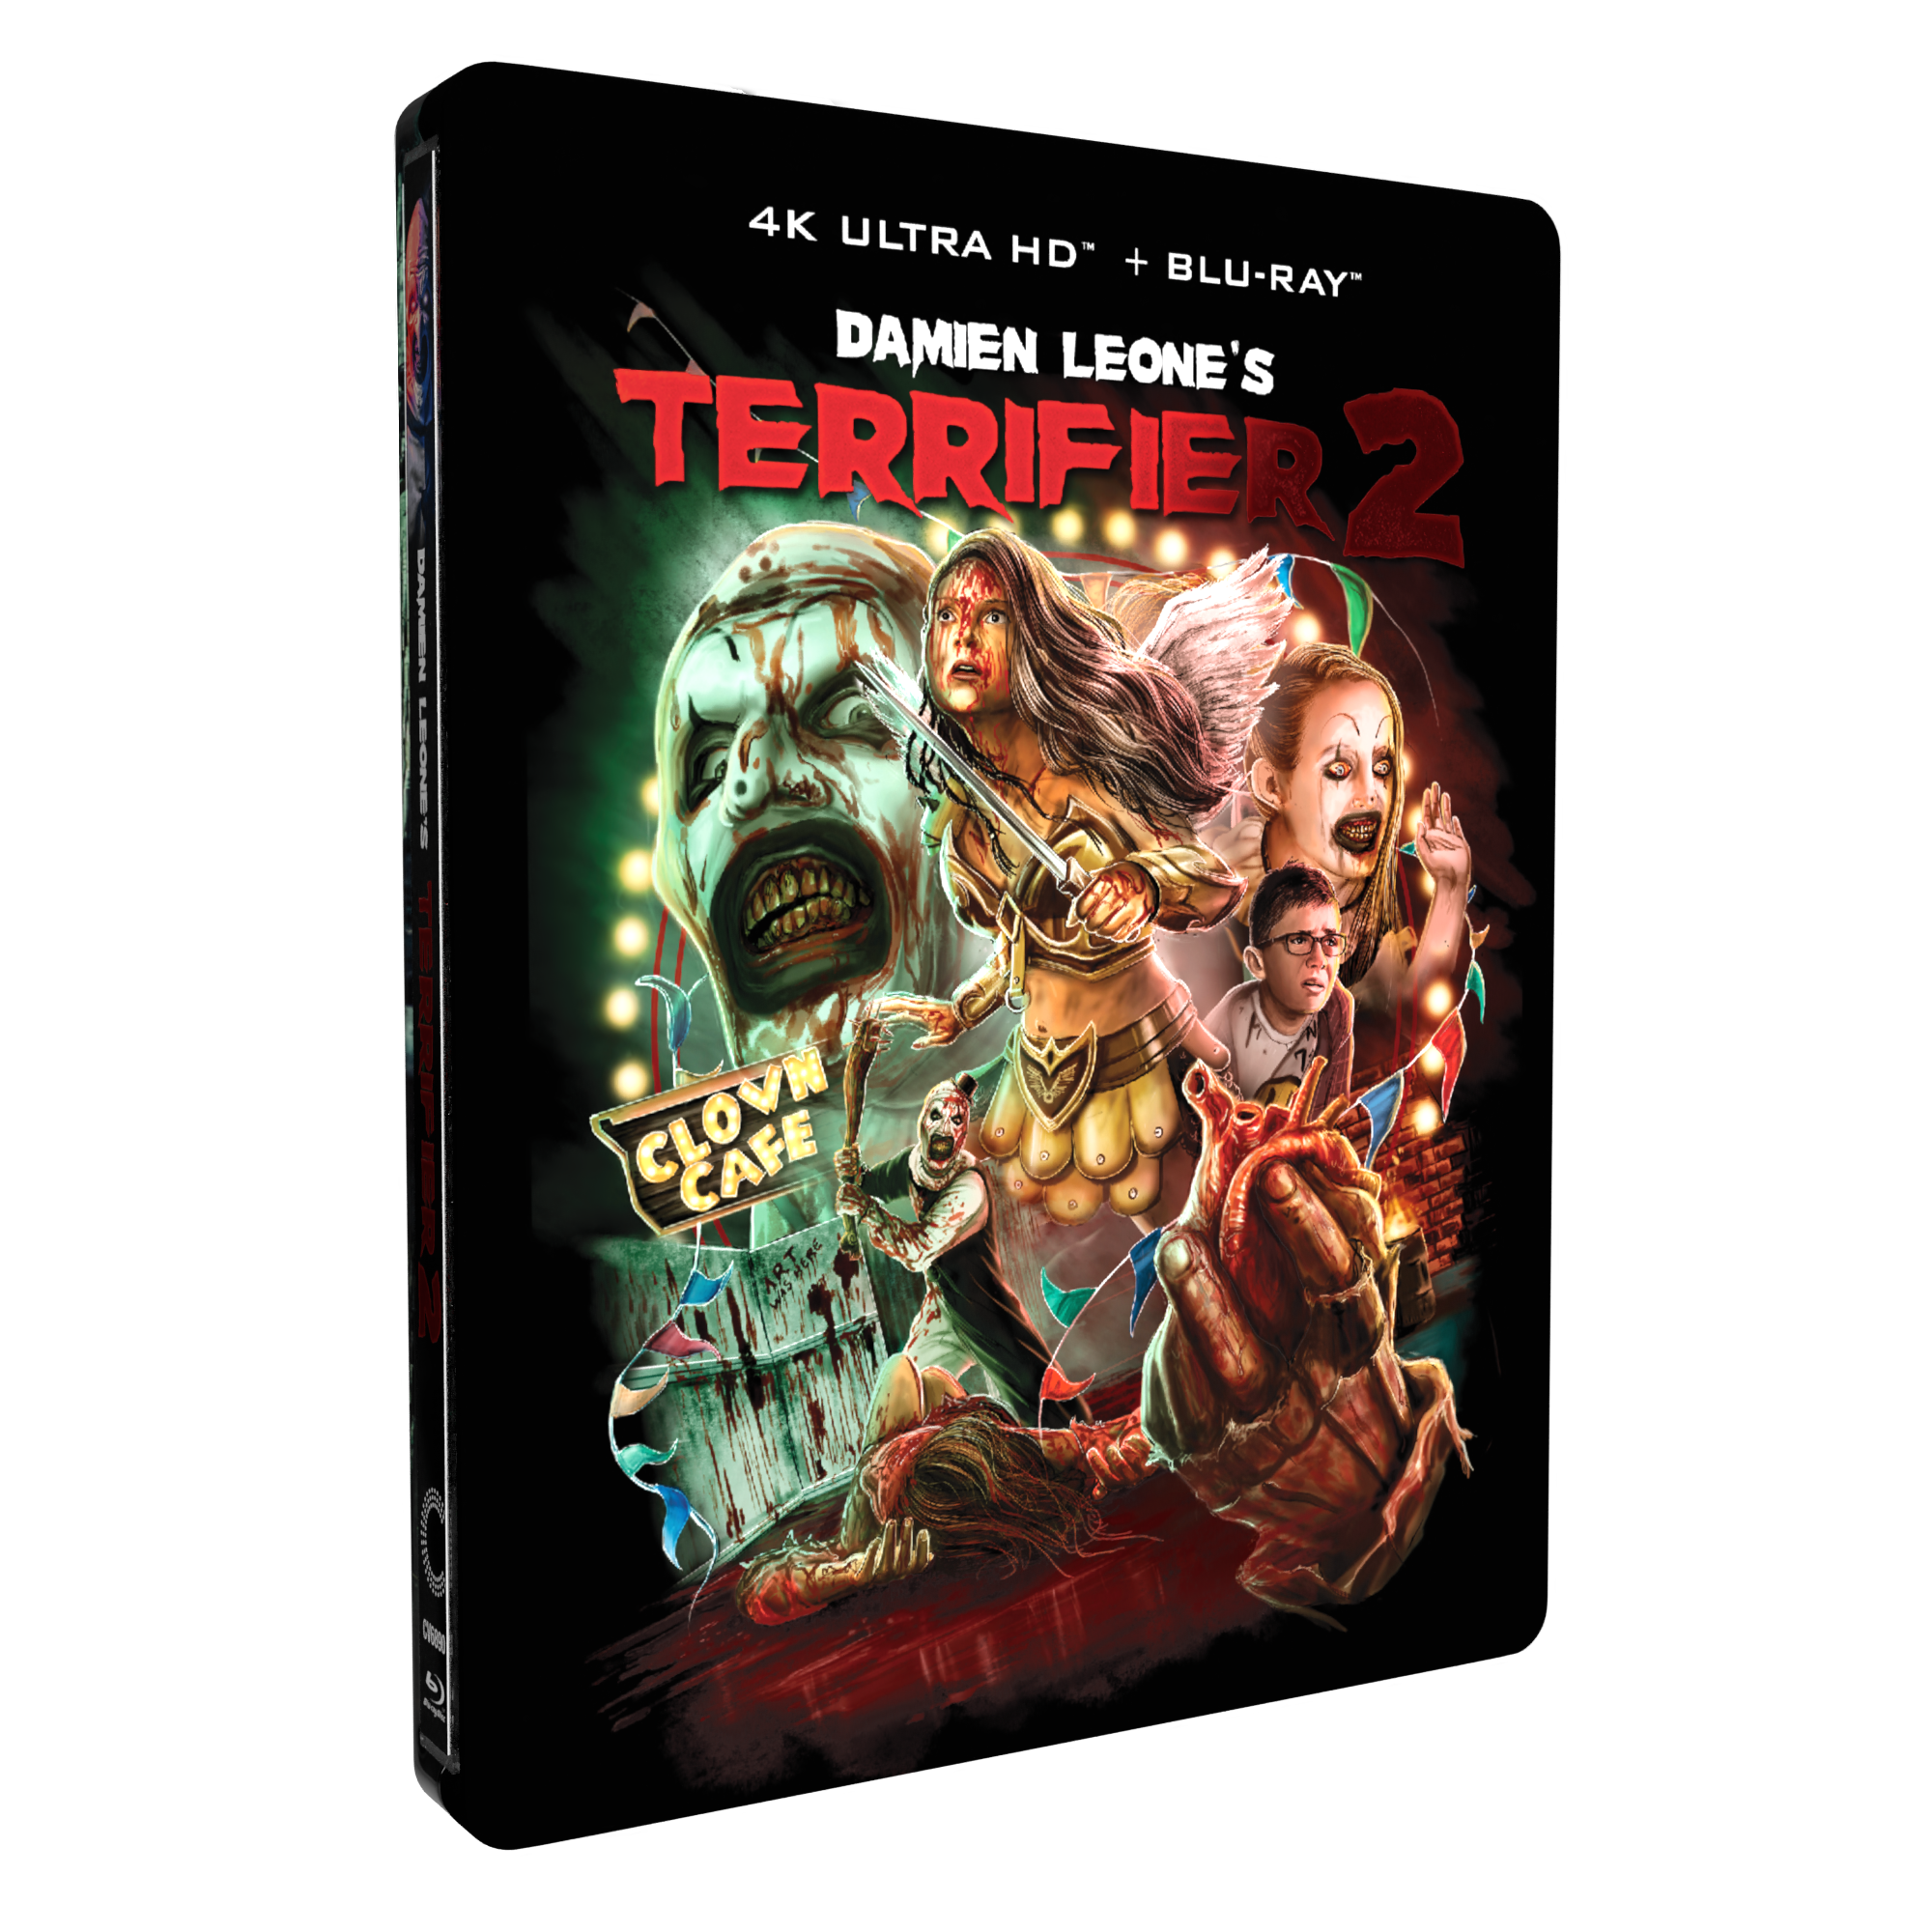 Terrifier 2 (4K Ultra HD + Blu-ray) (Steelbook), The Coven, Horror 